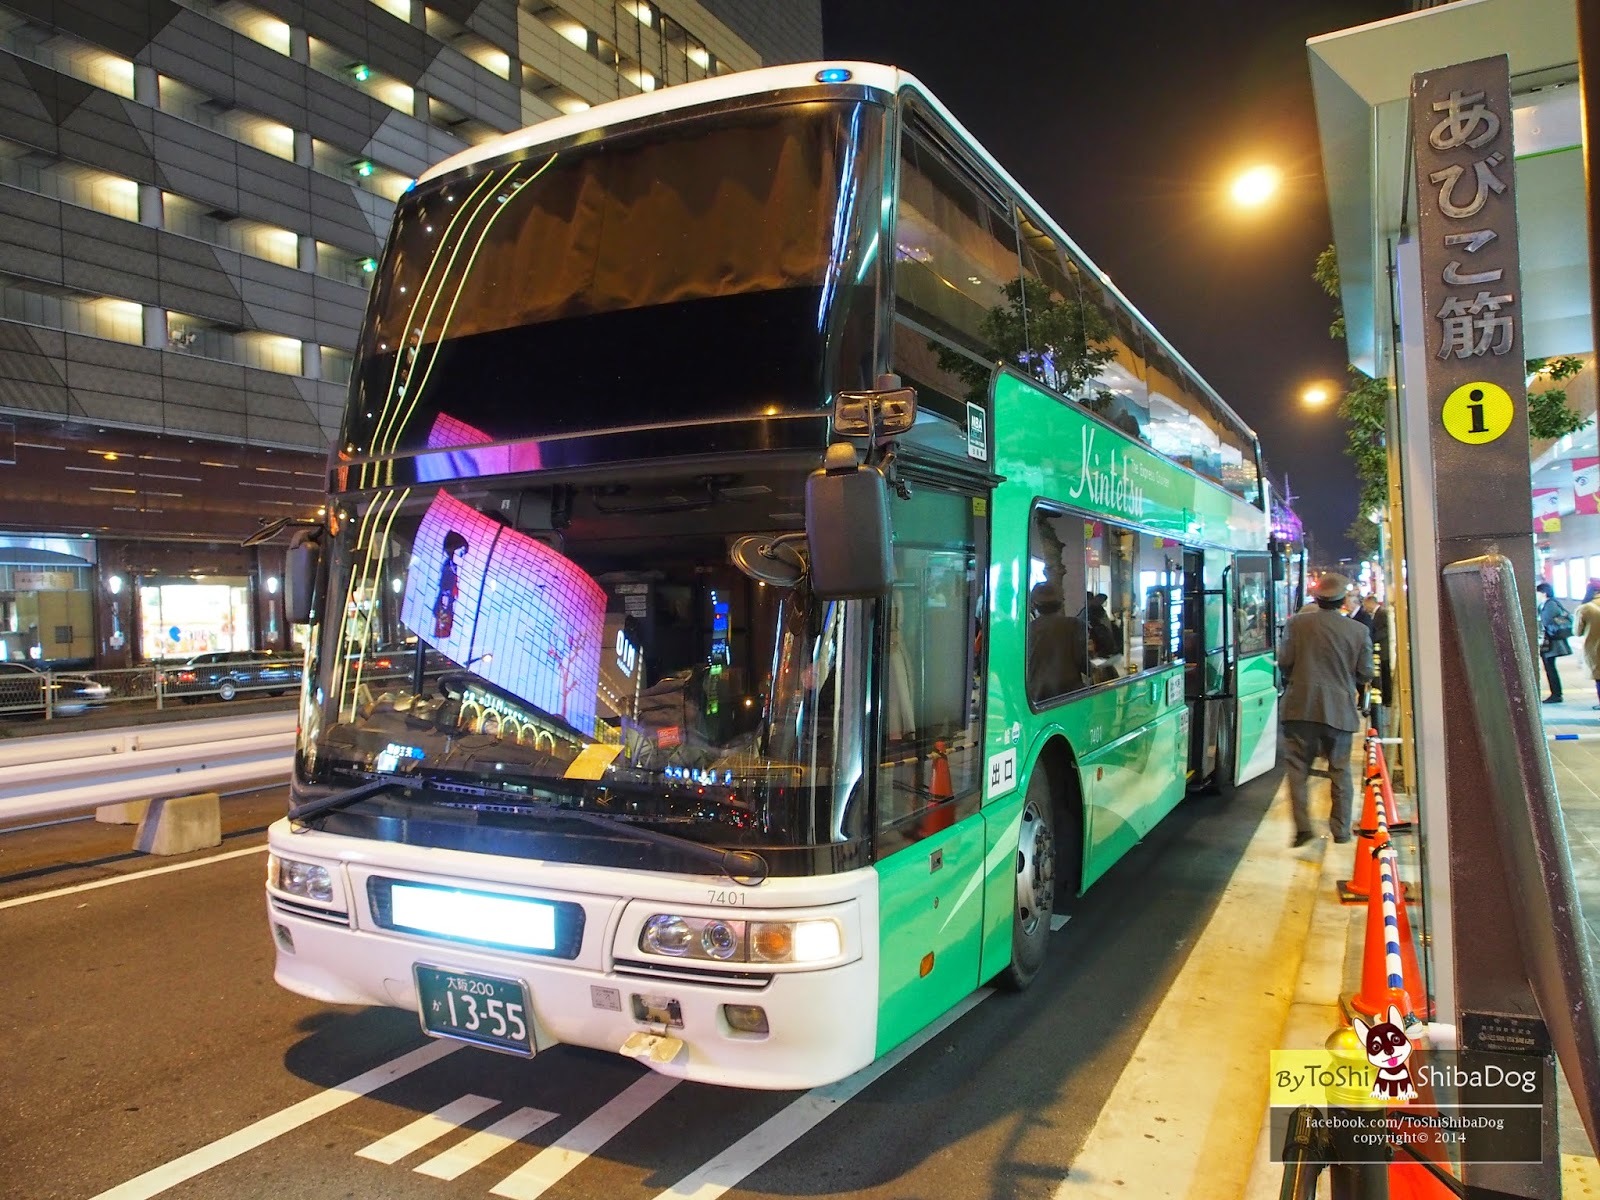 Транспорт в японии и токио. как пользоваться ????| whatusee.ru